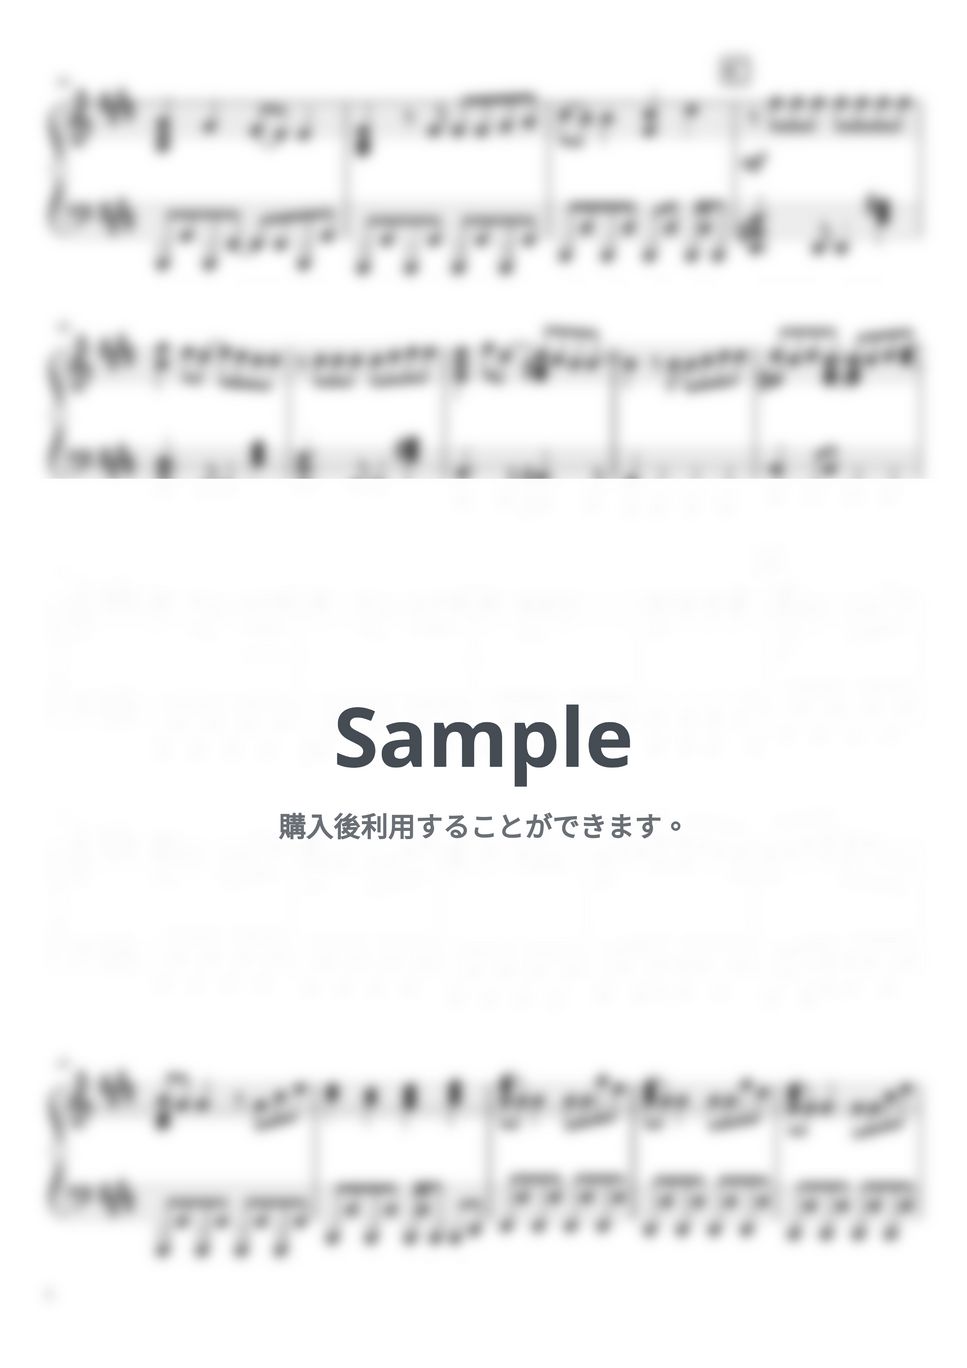 なにわ男子 - I Wish (6th Single「I Wish」/Short Ver./「マイ・セカンド・アオハル」主題歌) by ピアノぷりん